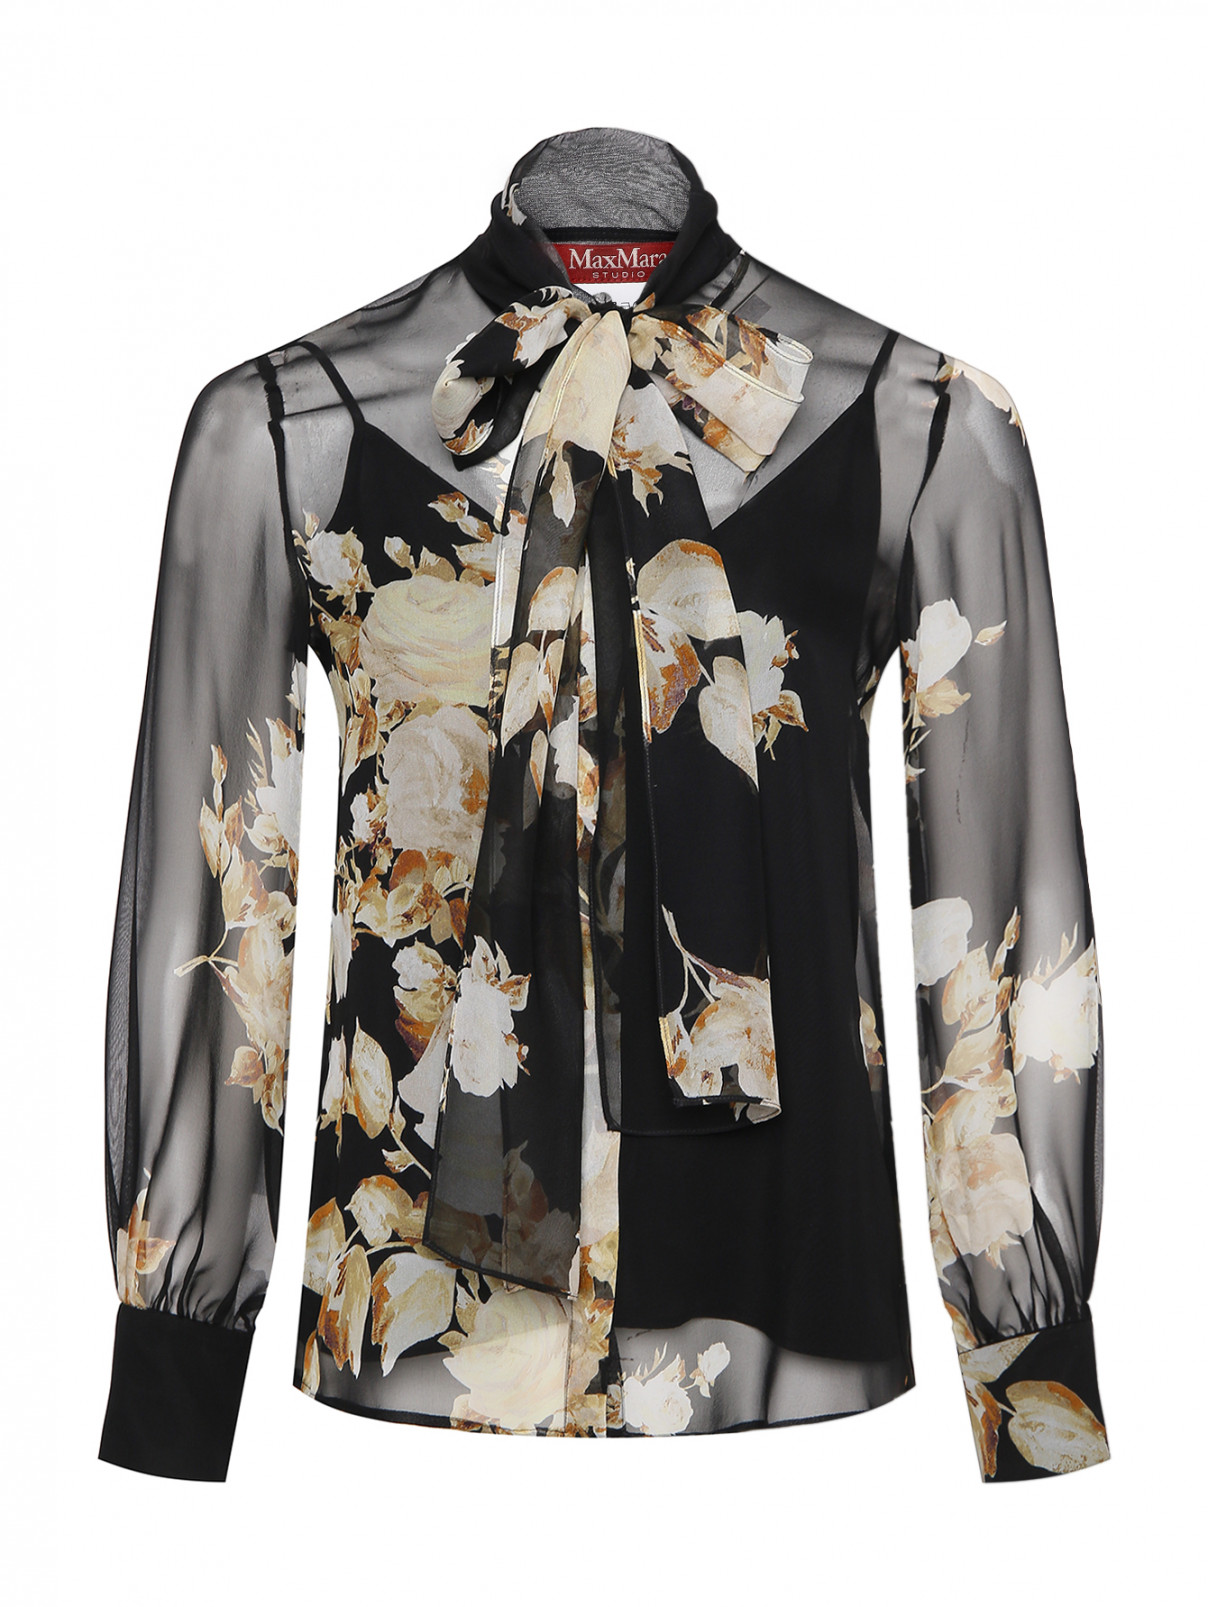 Полупрозрачная блуза из шелка Max Mara  –  Общий вид  – Цвет:  Черный